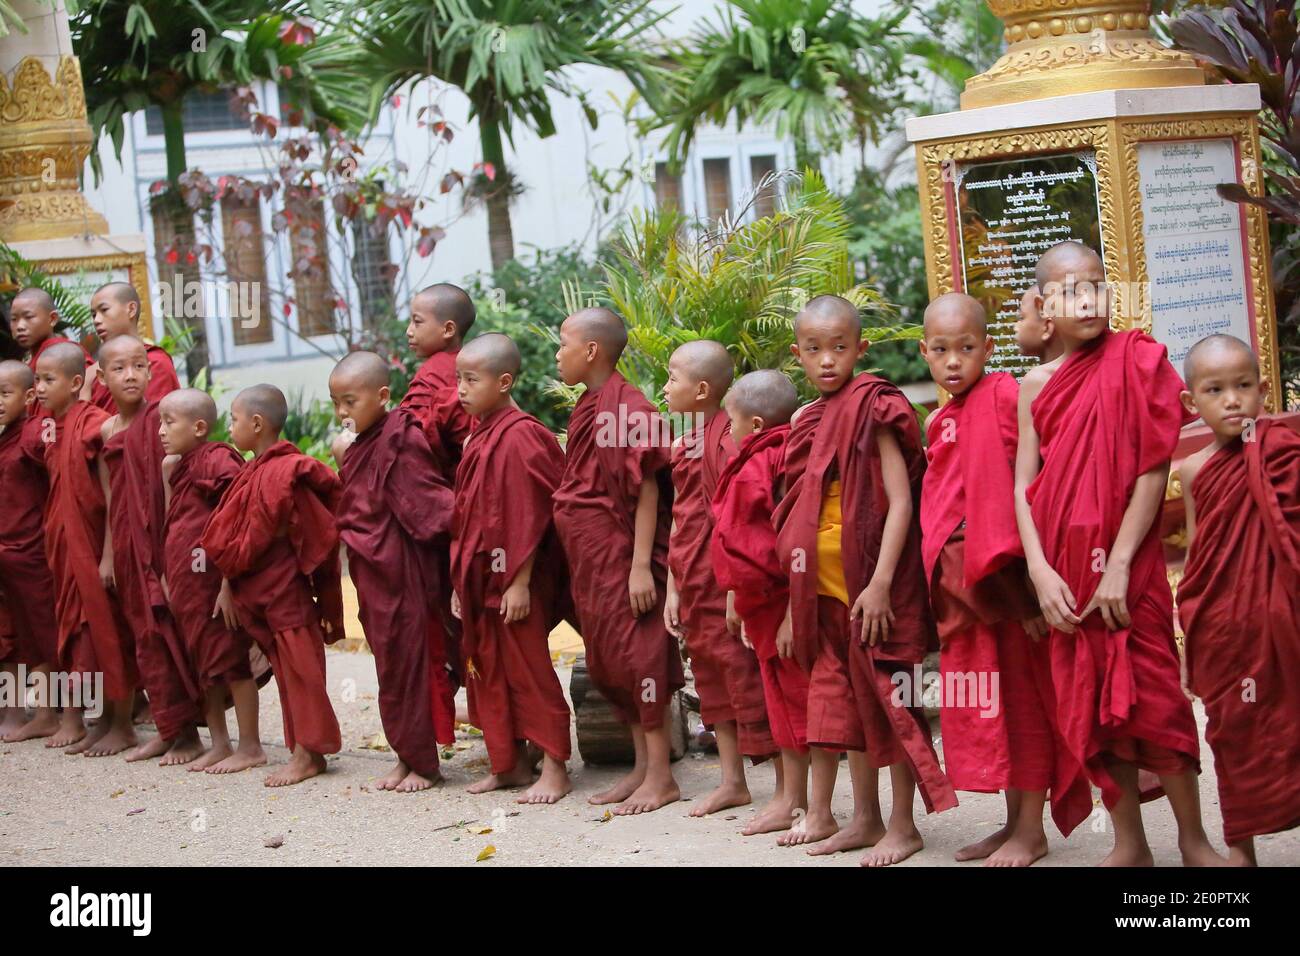 Monjes novatos en el monasterio de Shwe Yaunghwe Kyaung, cerca de Nyaungshwe, estado de Shan, Myanmar Foto de stock